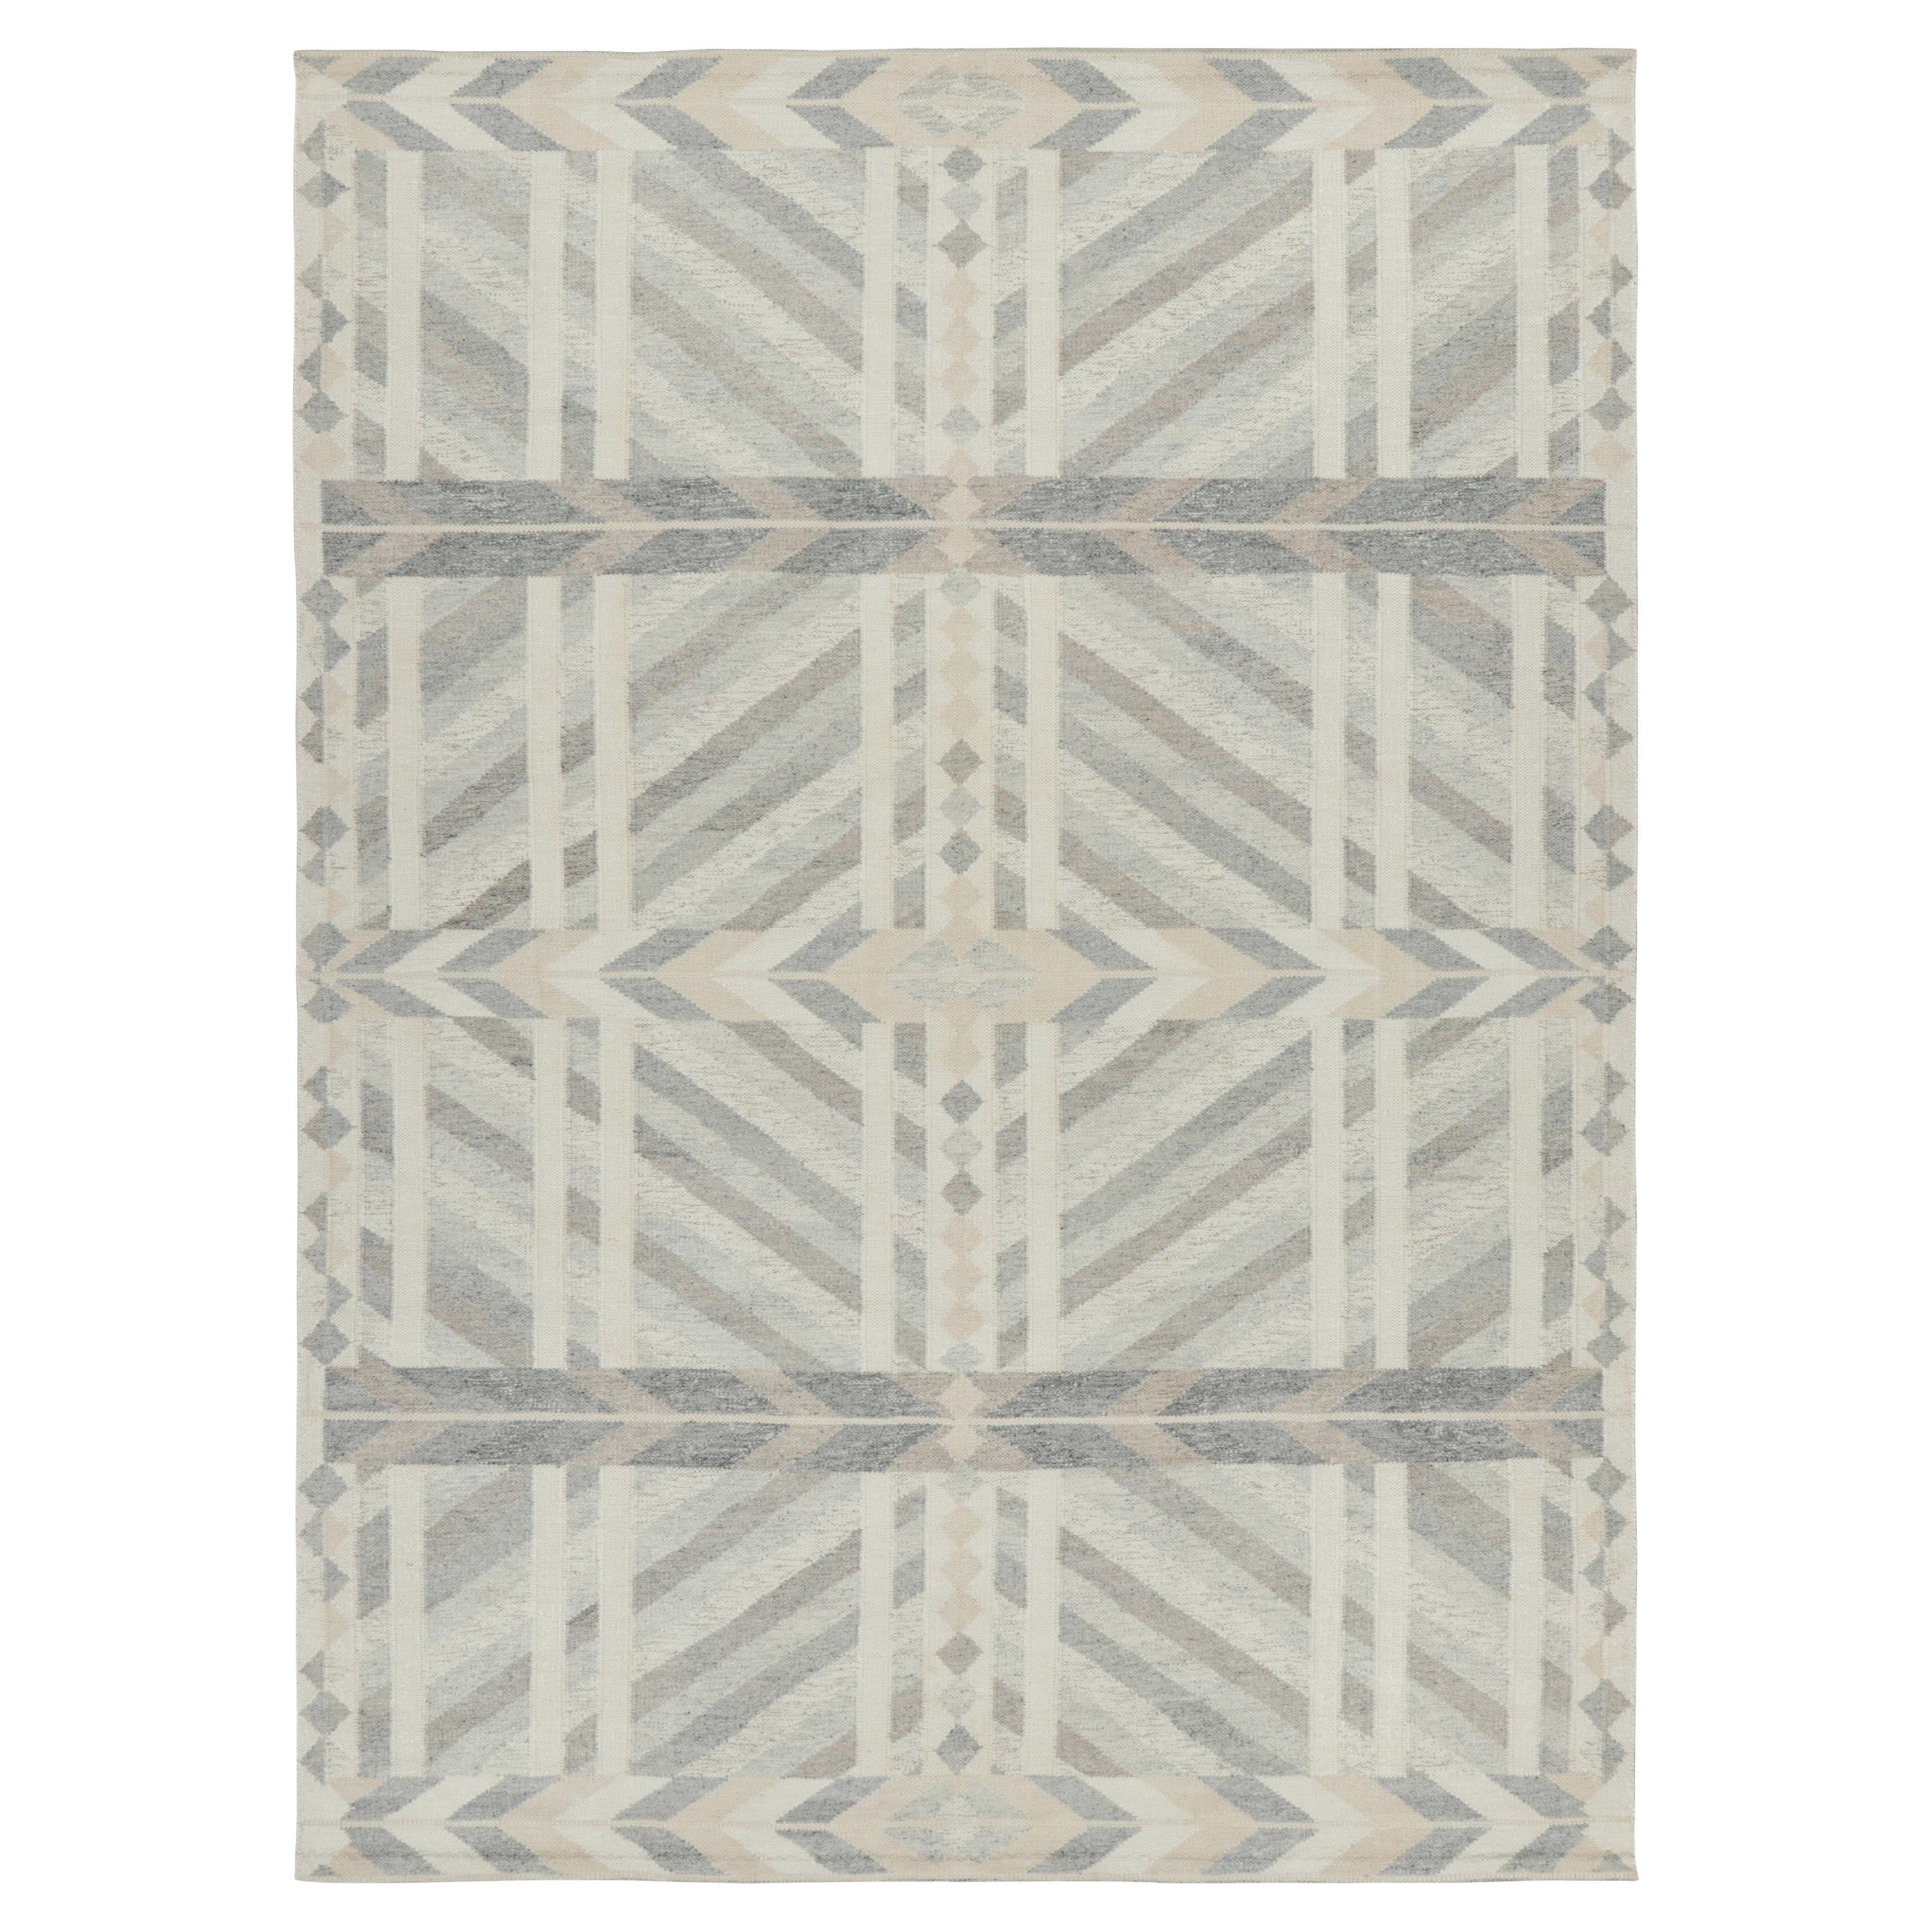 Rug & Kilim's Scandinavian Style Rug in Gray Beige and White Geometric Patterns (tapis de style scandinave à motifs géométriques gris, beige et blancs)